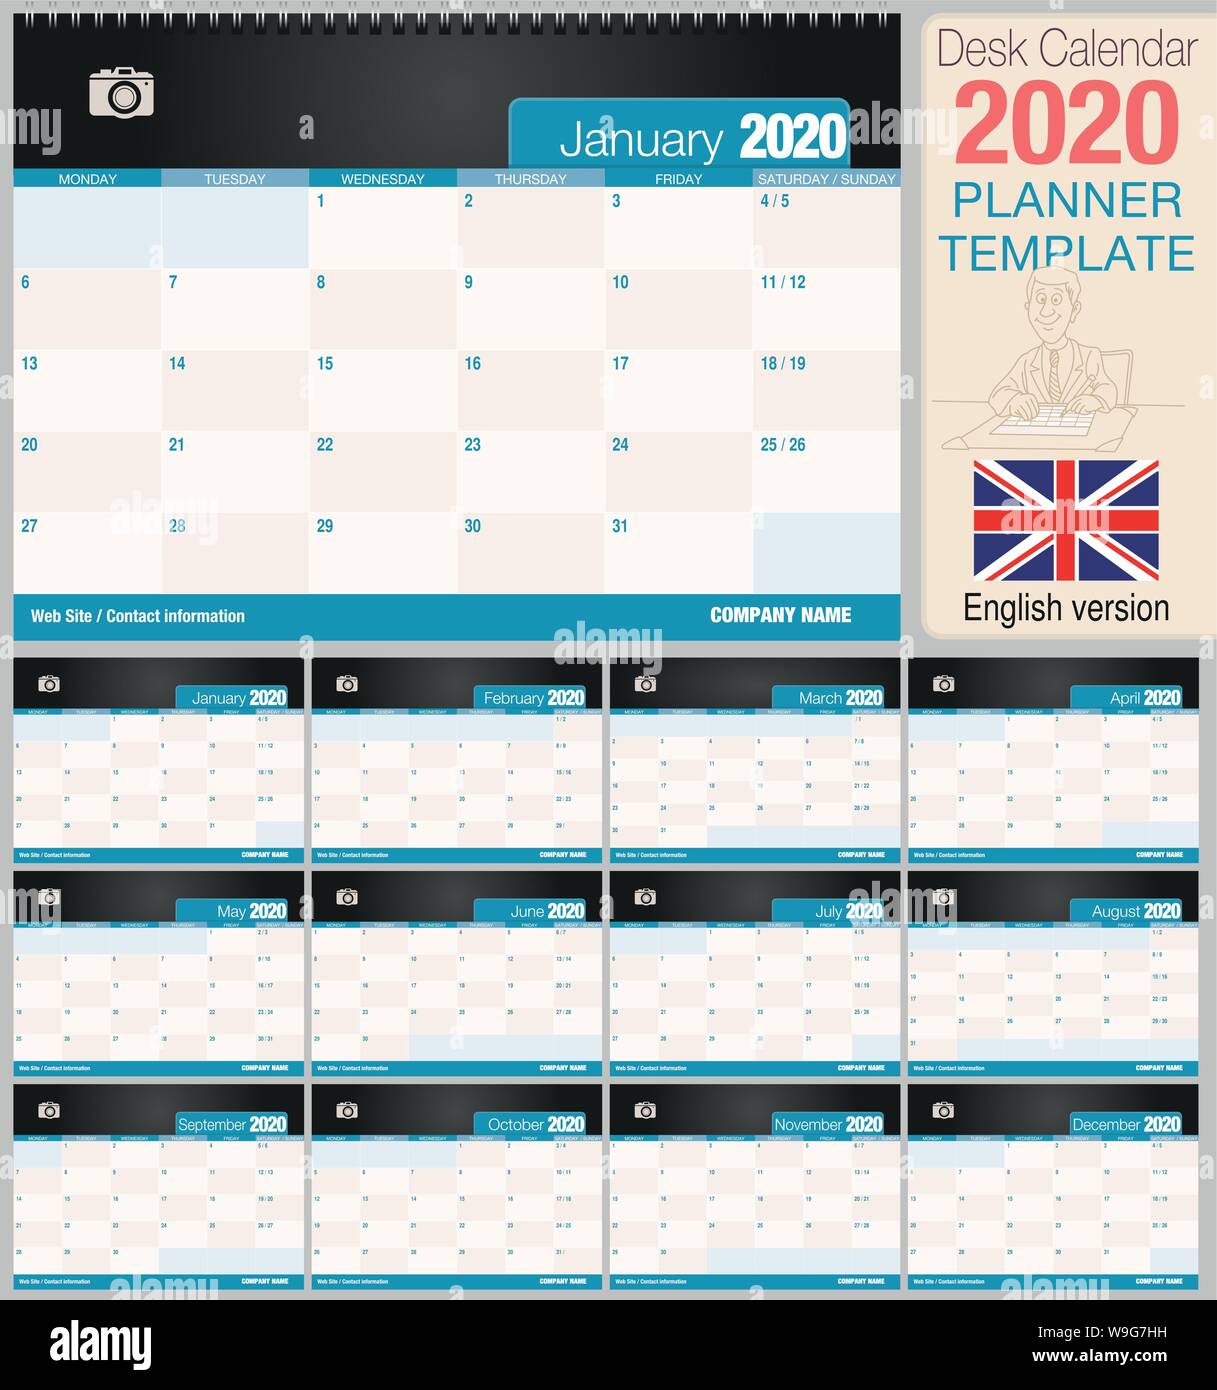 Utile scrivania calendario 2020 con lo spazio per posizionare una foto. Dimensioni: 210 mm x 148 mm. Versione Inglese - immagine vettoriale Illustrazione Vettoriale